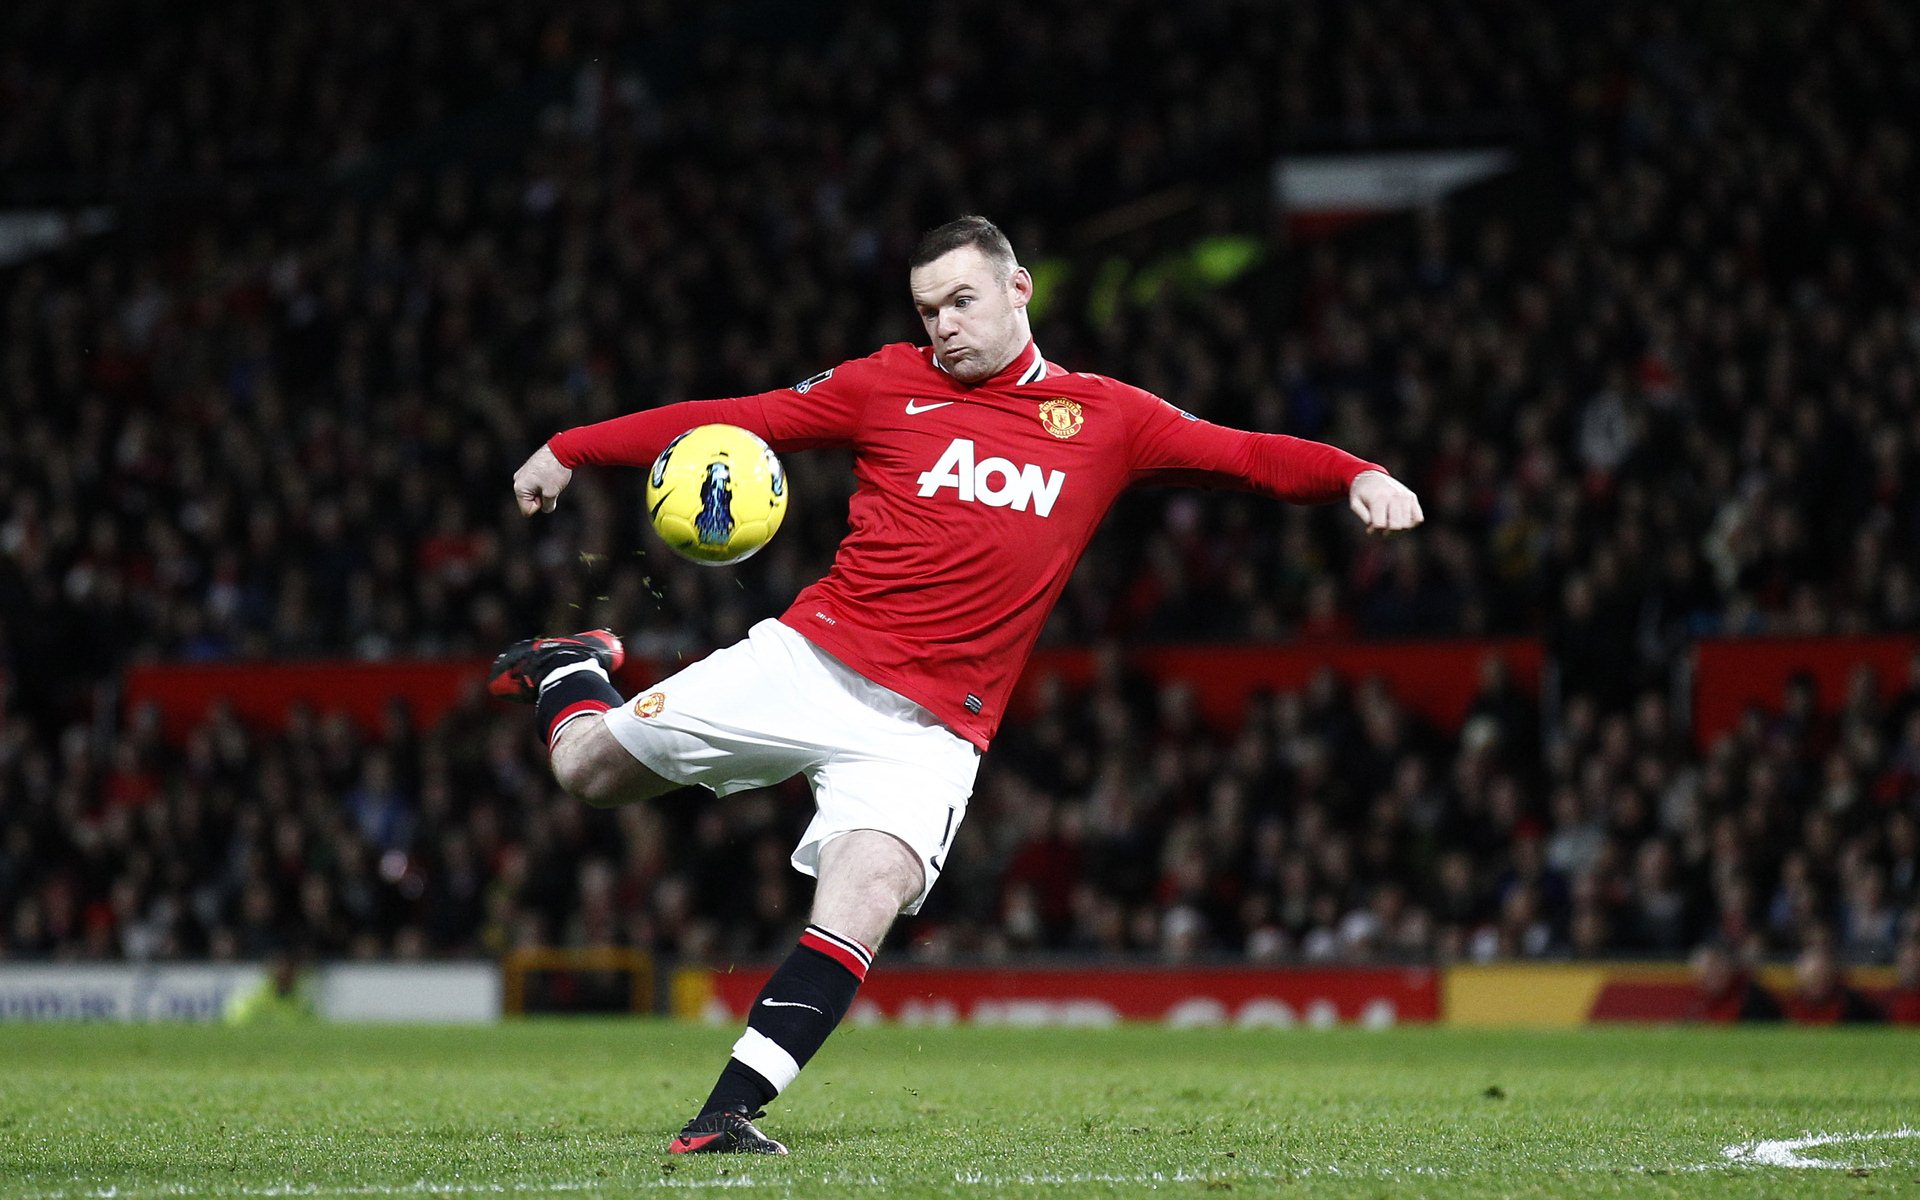 Wayne Rooney Shoot Ball Hd Wallpaper Wallpaper High resolution